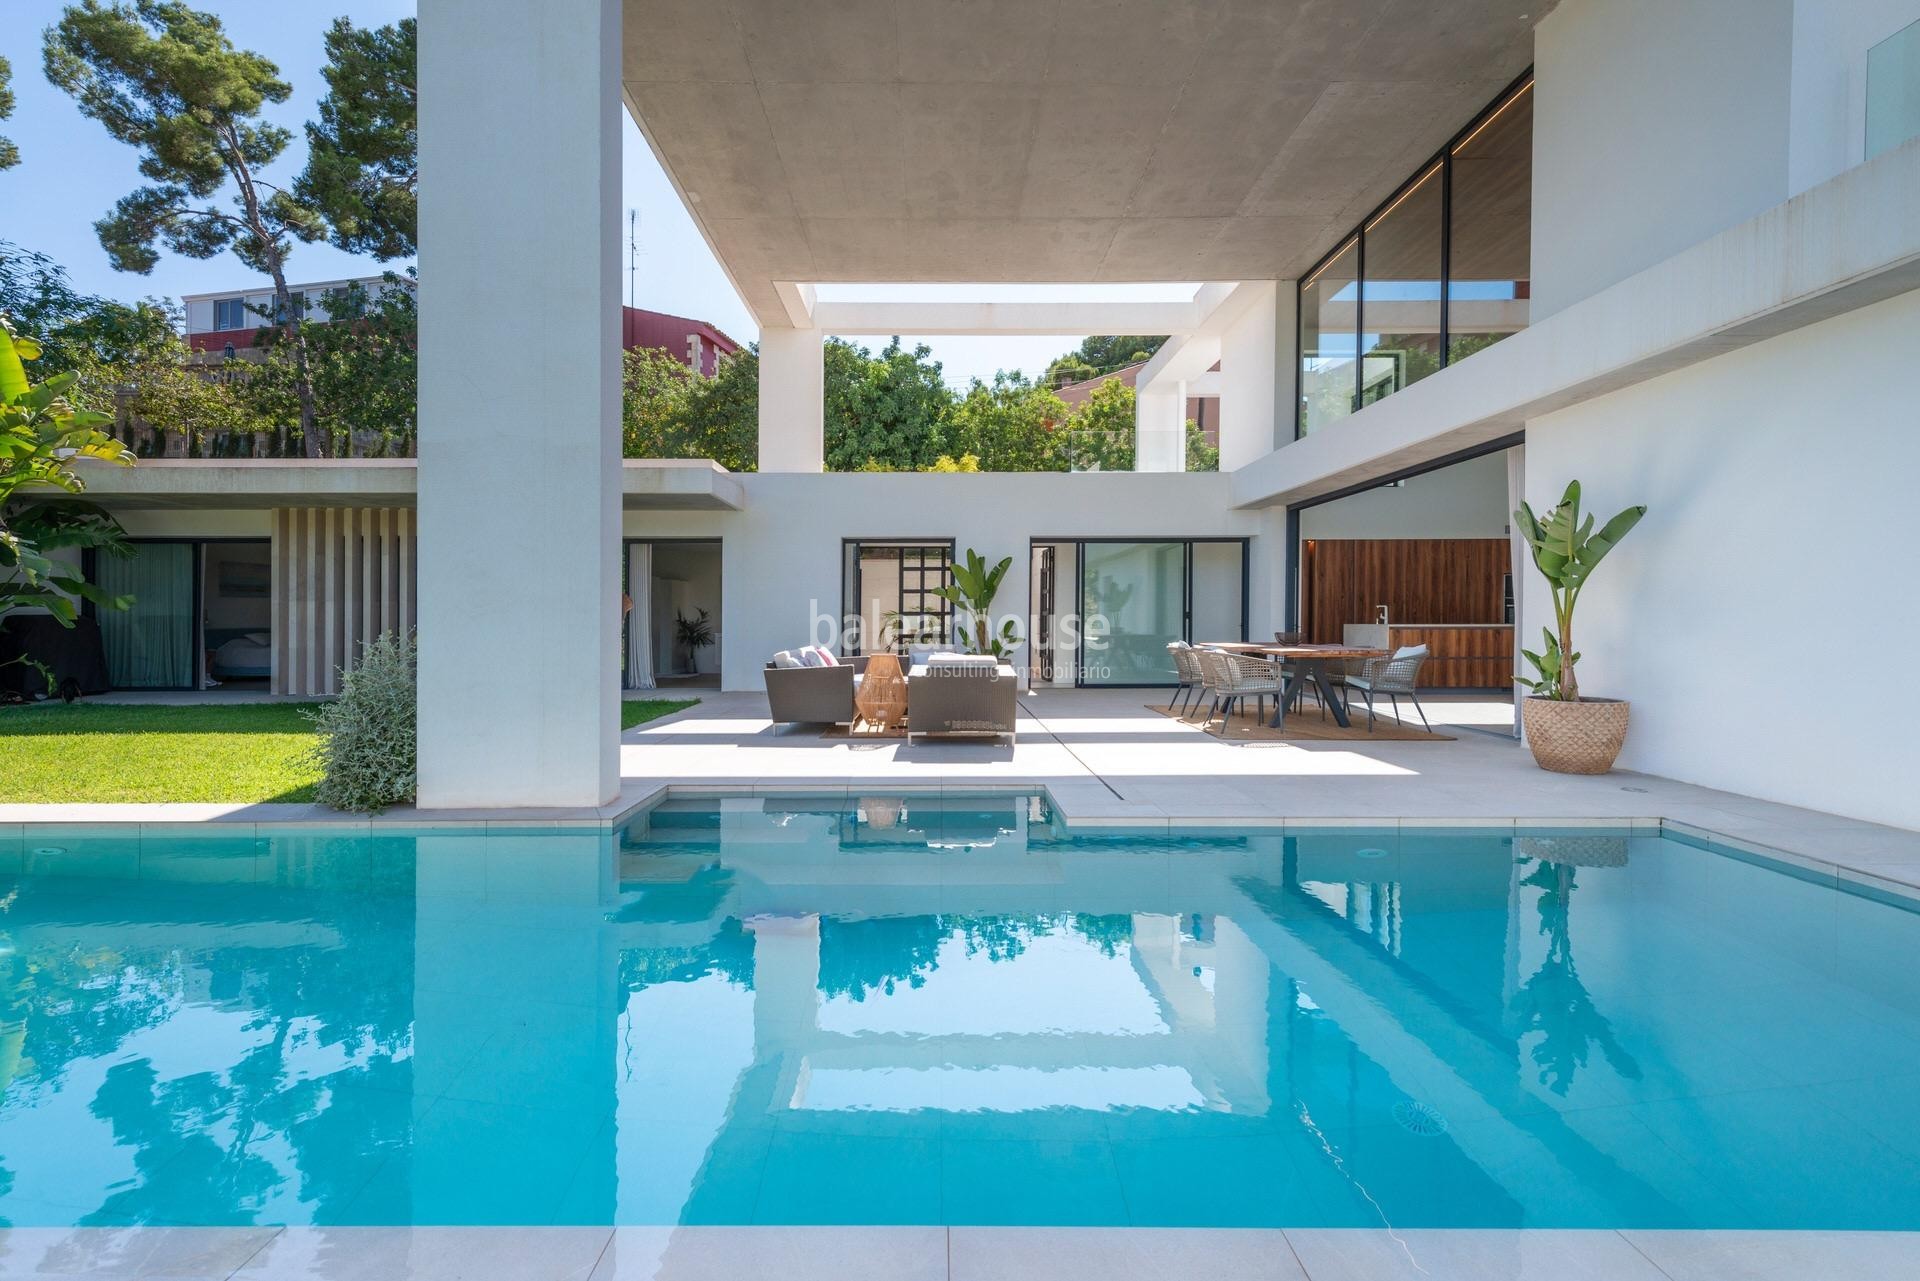 Diseño, luz y confort en esta villa con grandes espacios exteriores cerca de la playa en Santa Ponsa